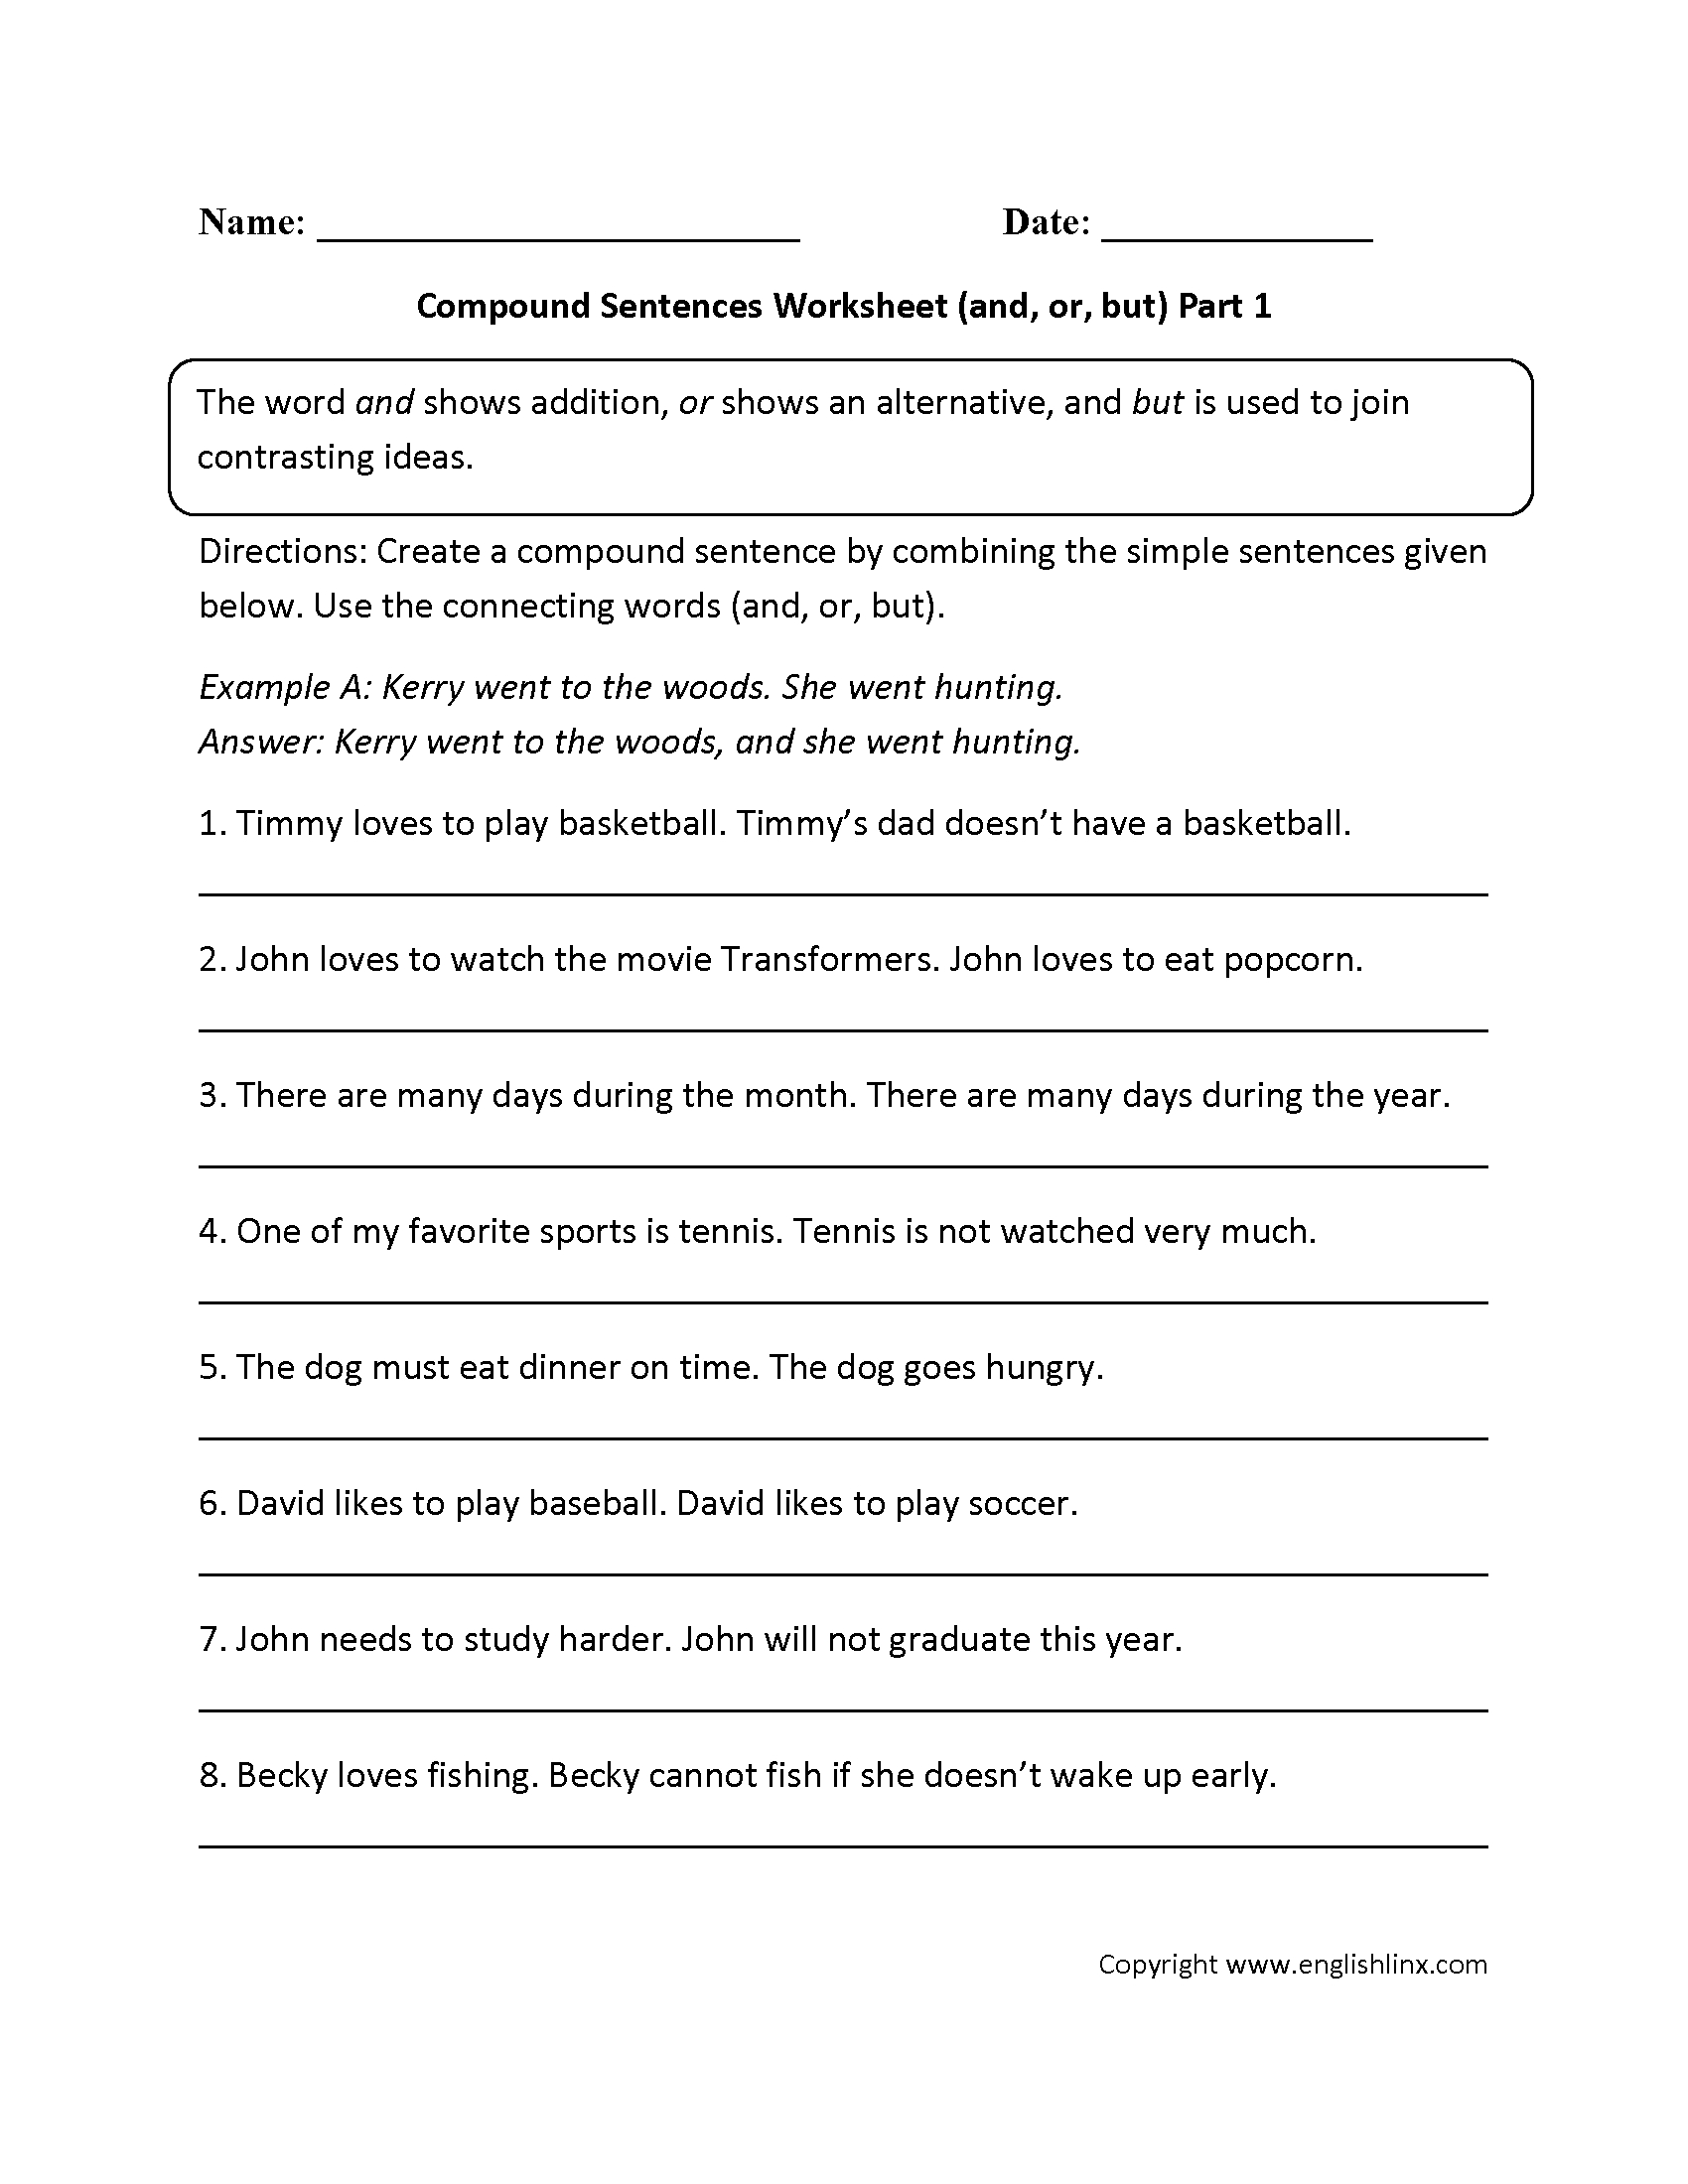 Sentences Worksheets  Compound Sentences Worksheets Regarding Compound Sentences Worksheet